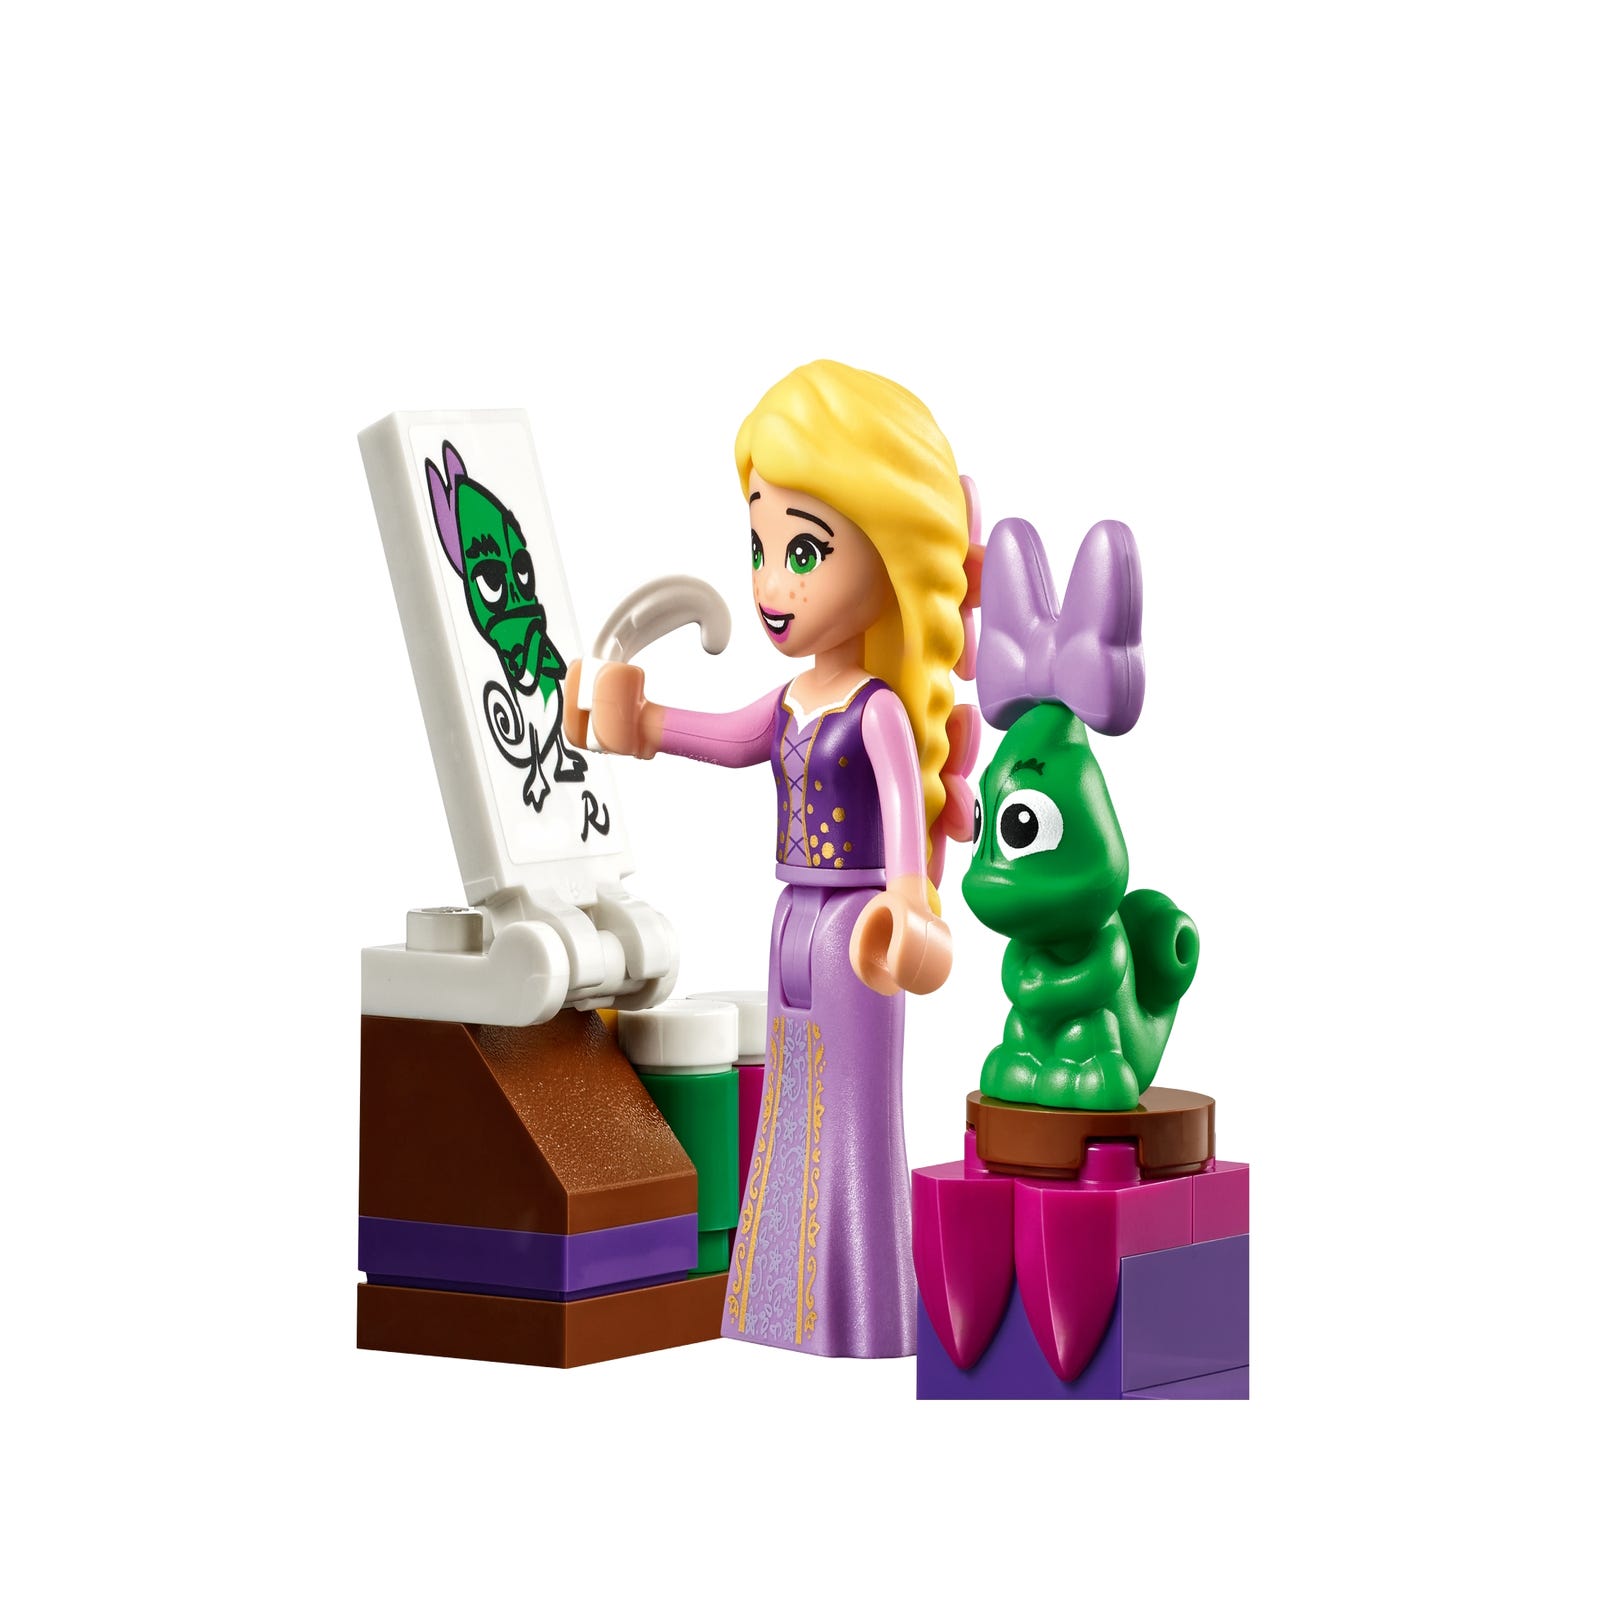 Rapunzel S Castle Bedroom Disney Buy Online At The Official Lego Shop Us